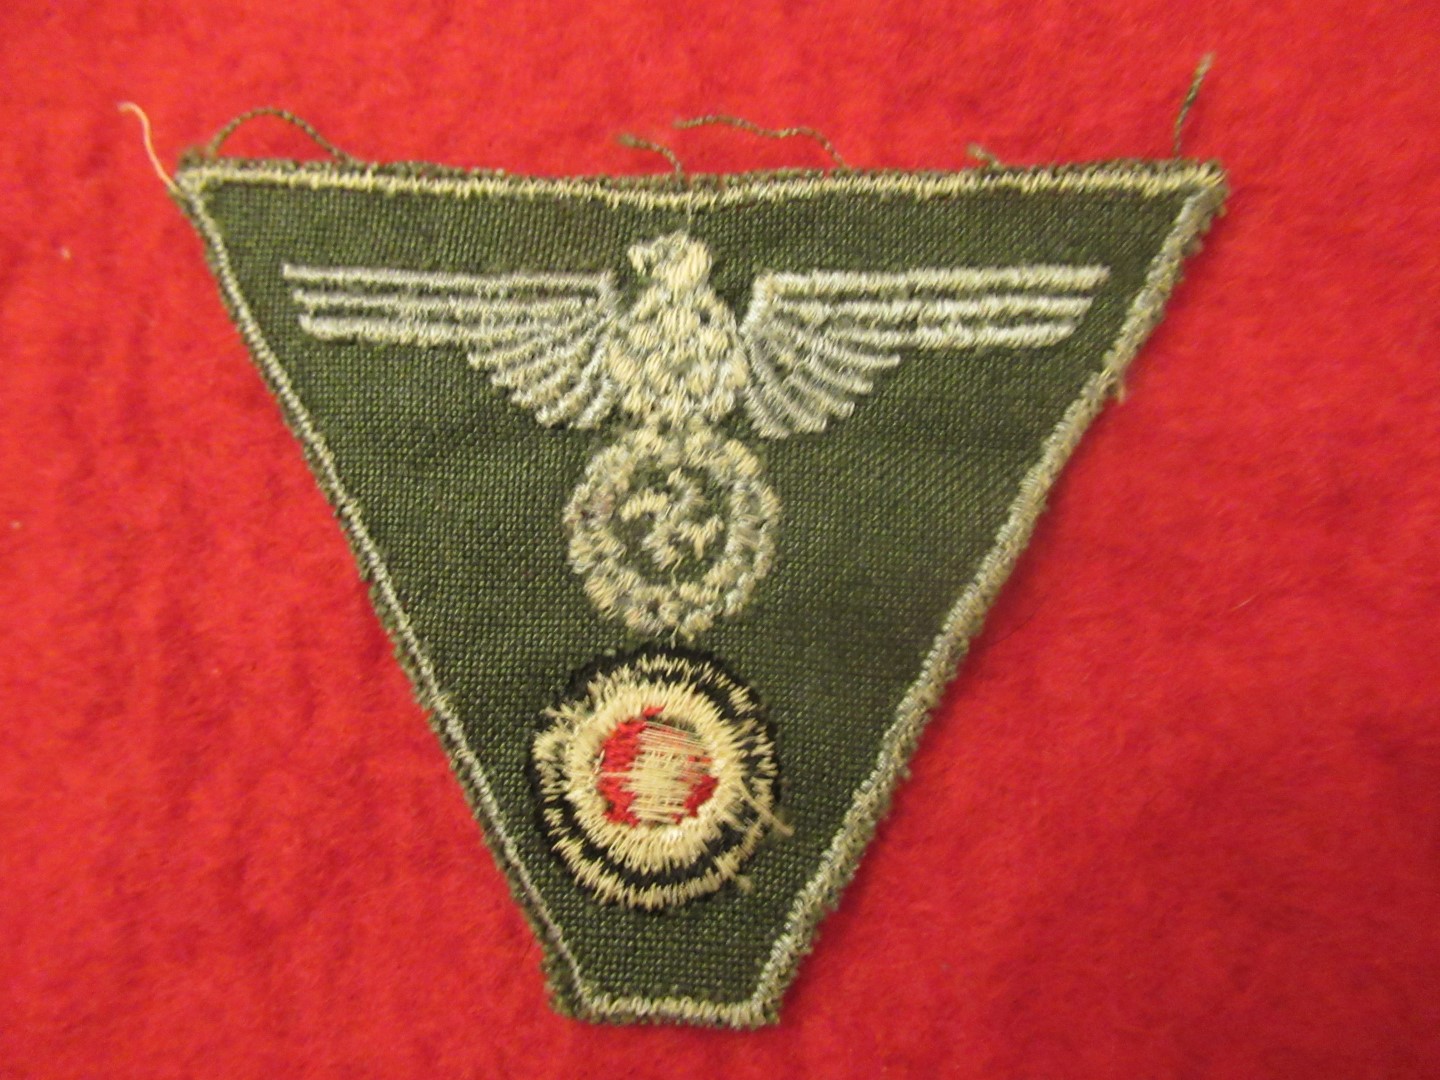 WH M45 cap insignia